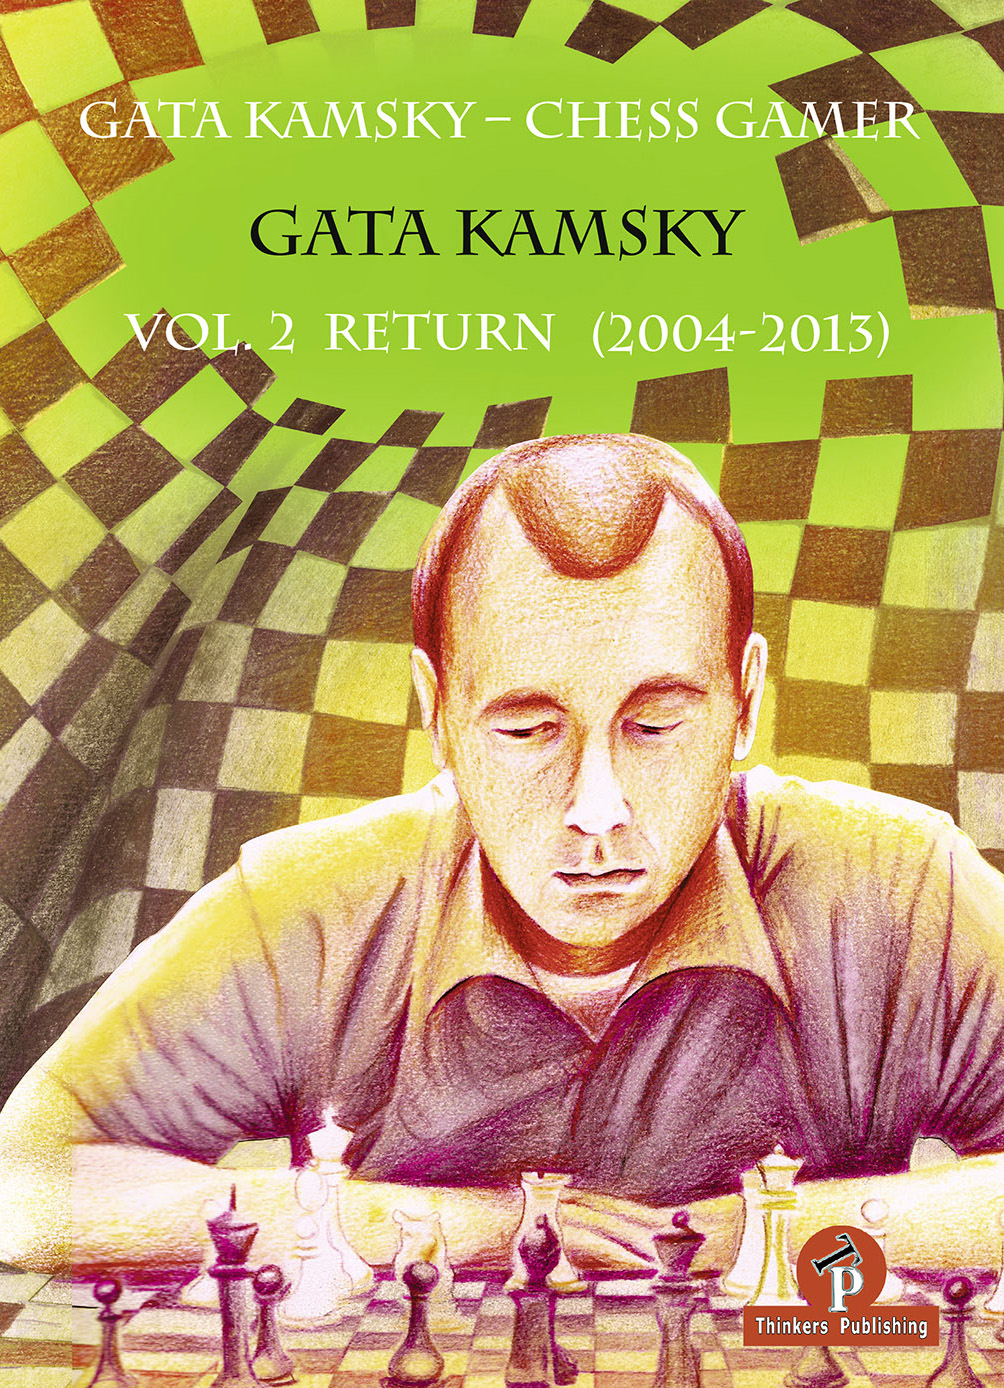 The Chess Gamer volume 2 - Return, Gata Chamsky